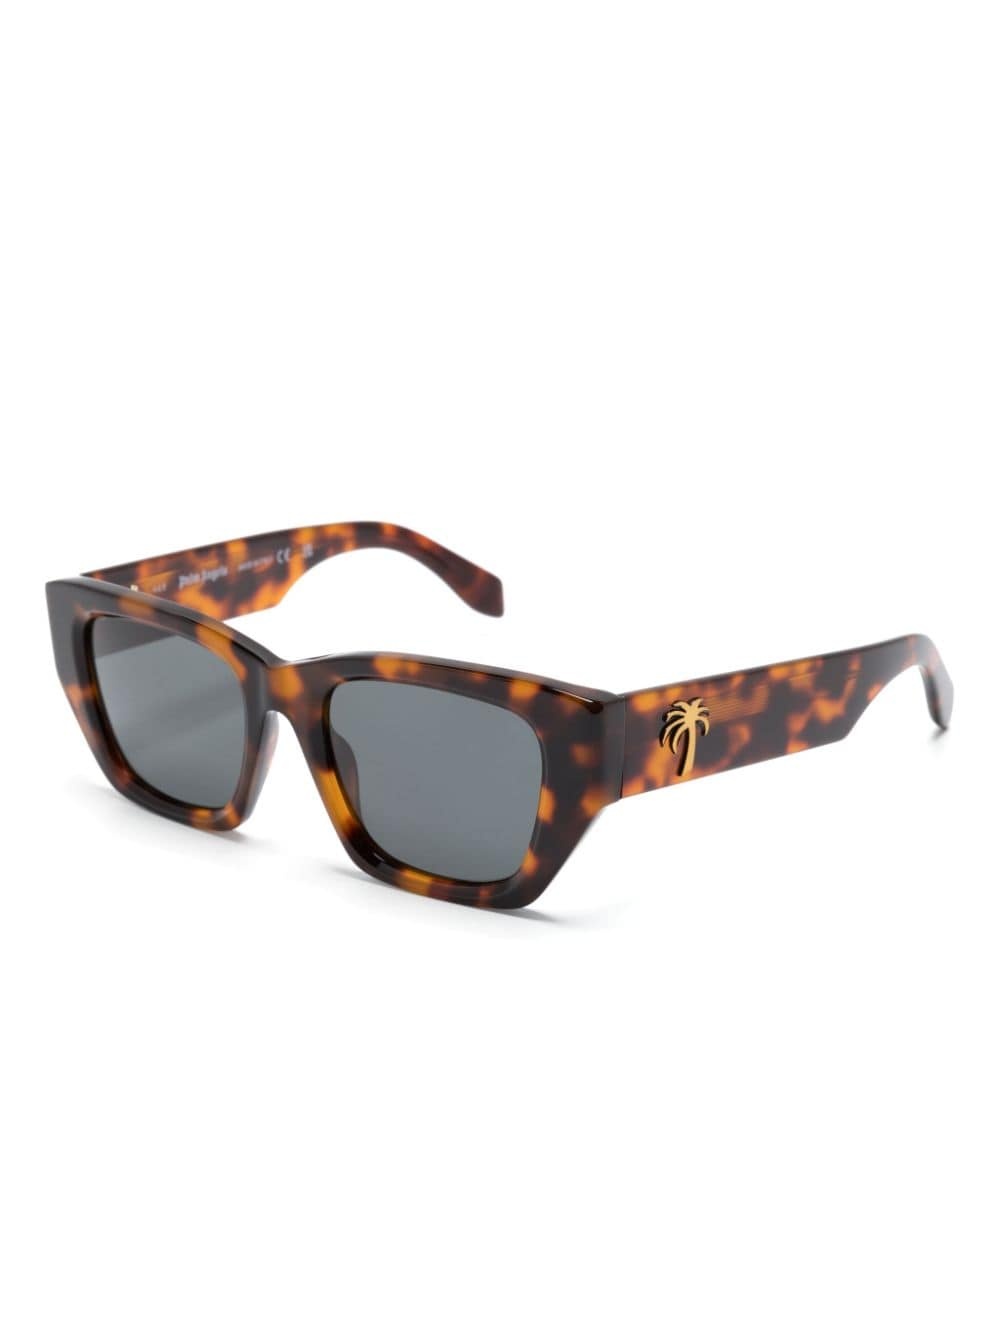 Hinkley square-frame sunglasses - 2